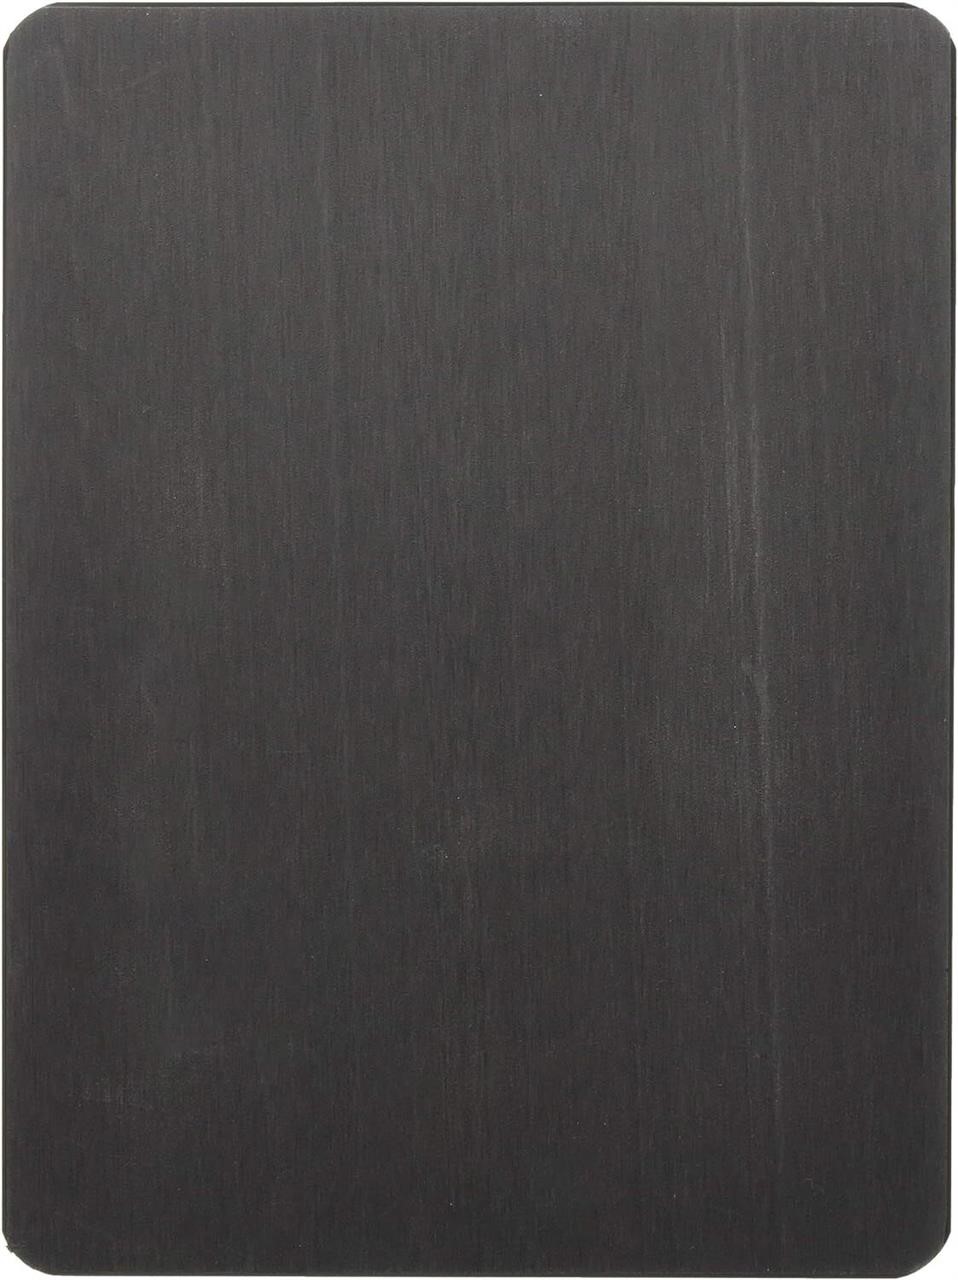 Endo Shoji AMNE901 Board  Black  Polyethylene